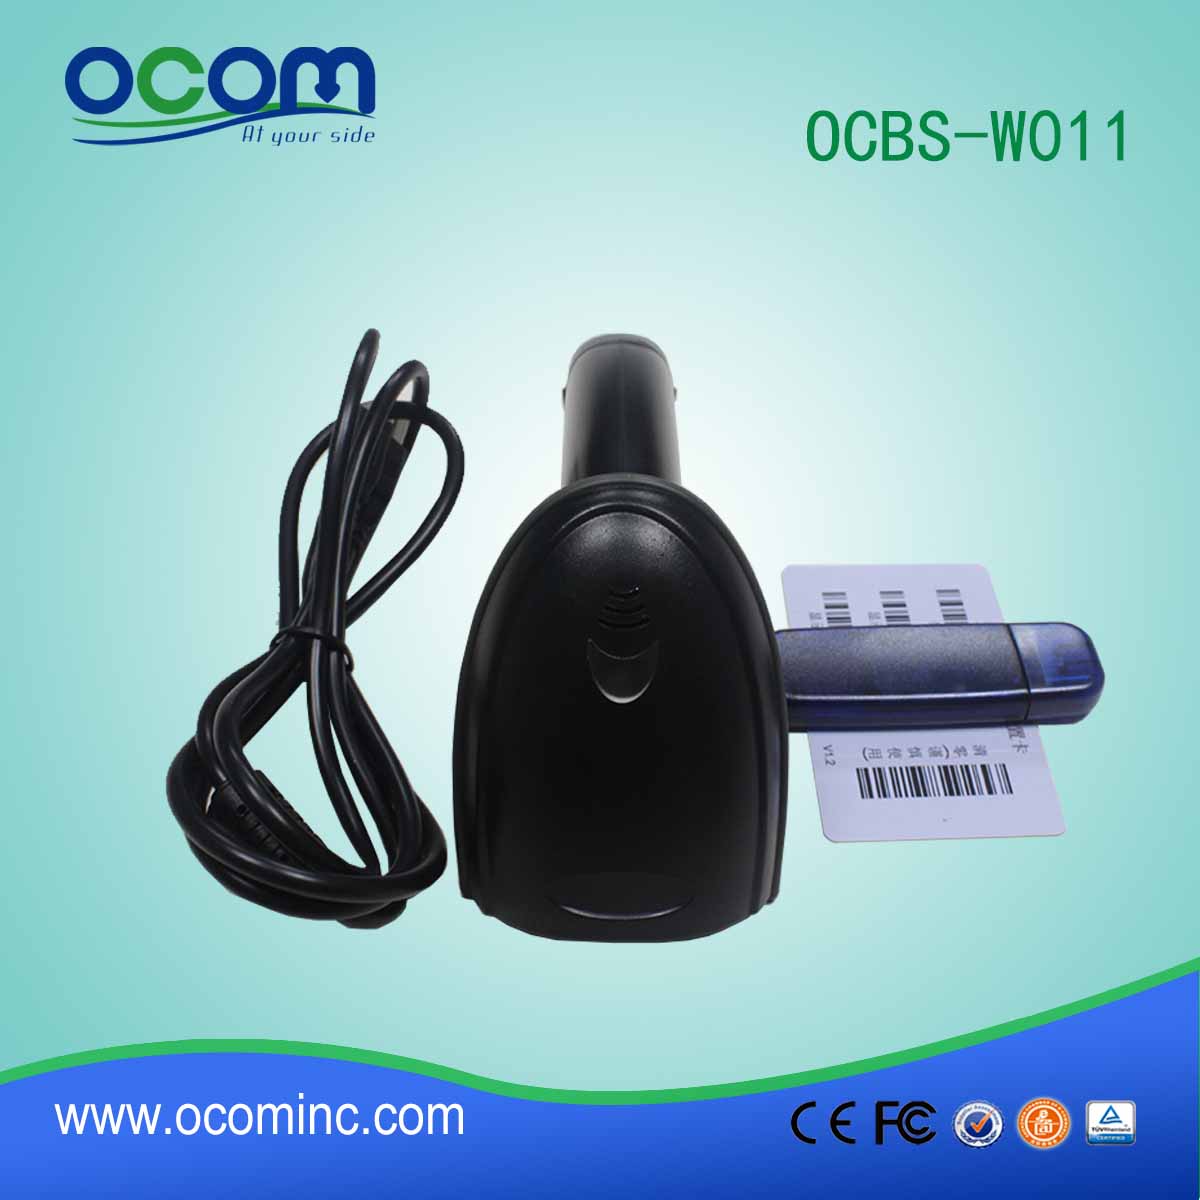 OCBs-W011 Bluetooth scanner de código de barras sem fio com porta USB